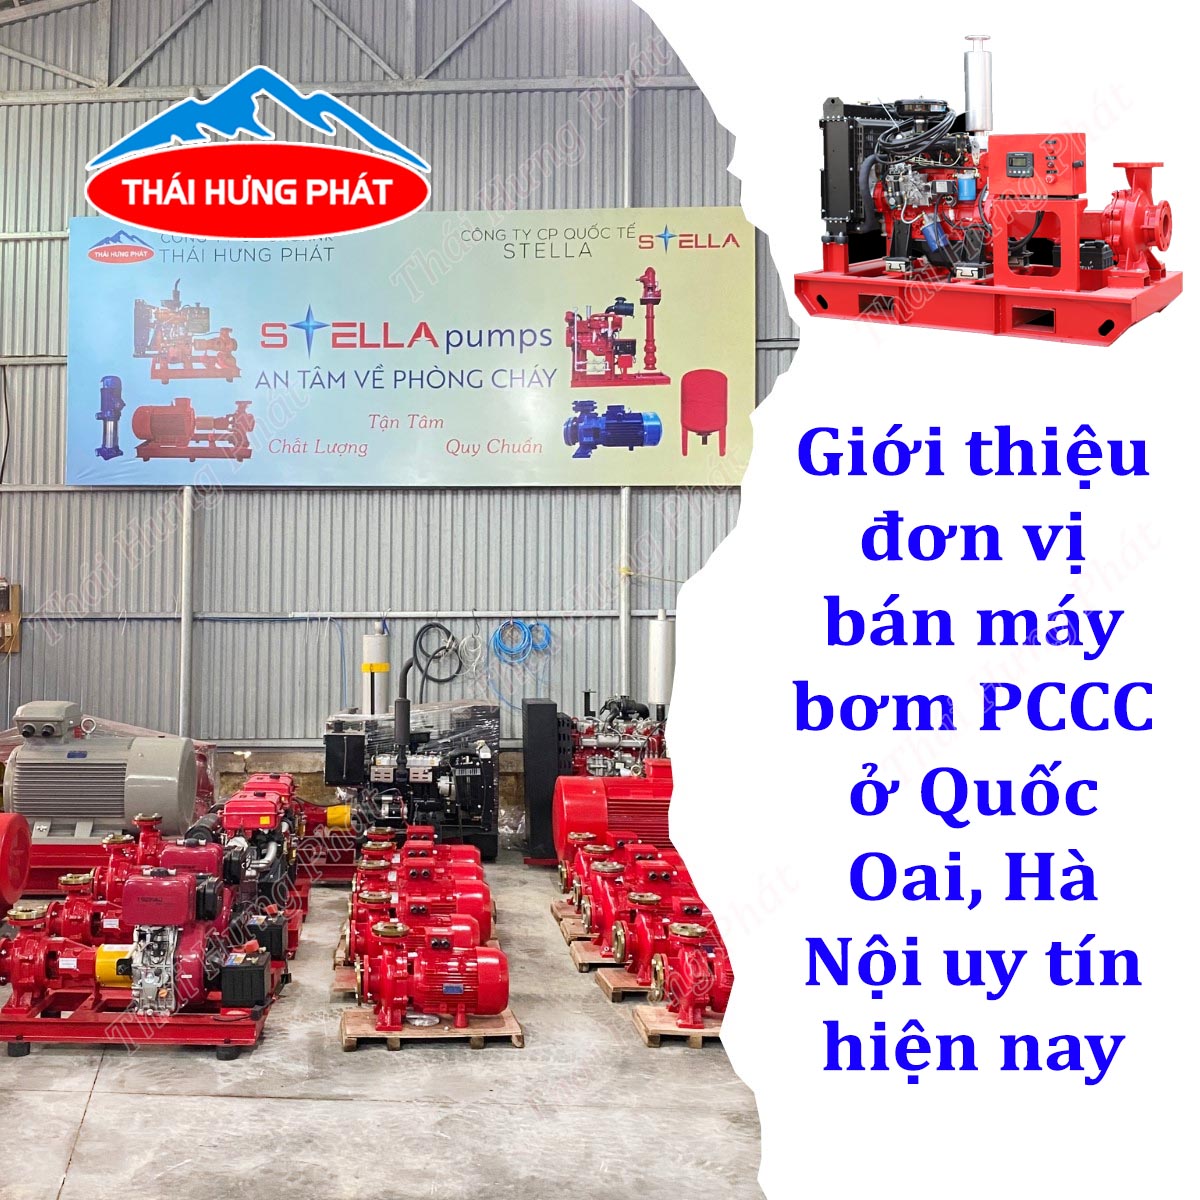 Tổng đại lý máy bơm PCCC nhập khẩu ở huyện Quốc Oai Hà Nội